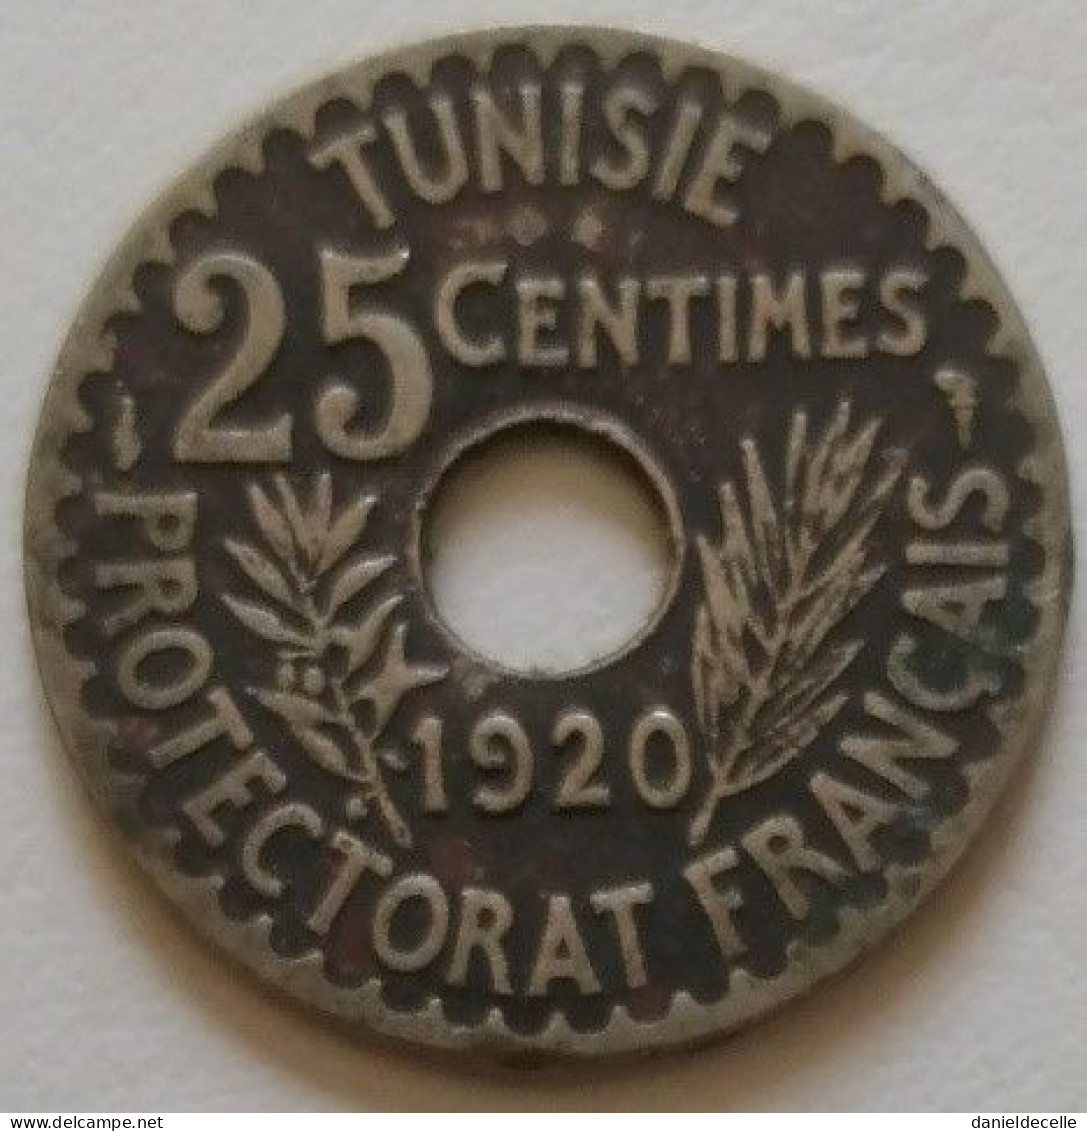 25 Centimes Tunisie 1338 (1920) - Tunisie